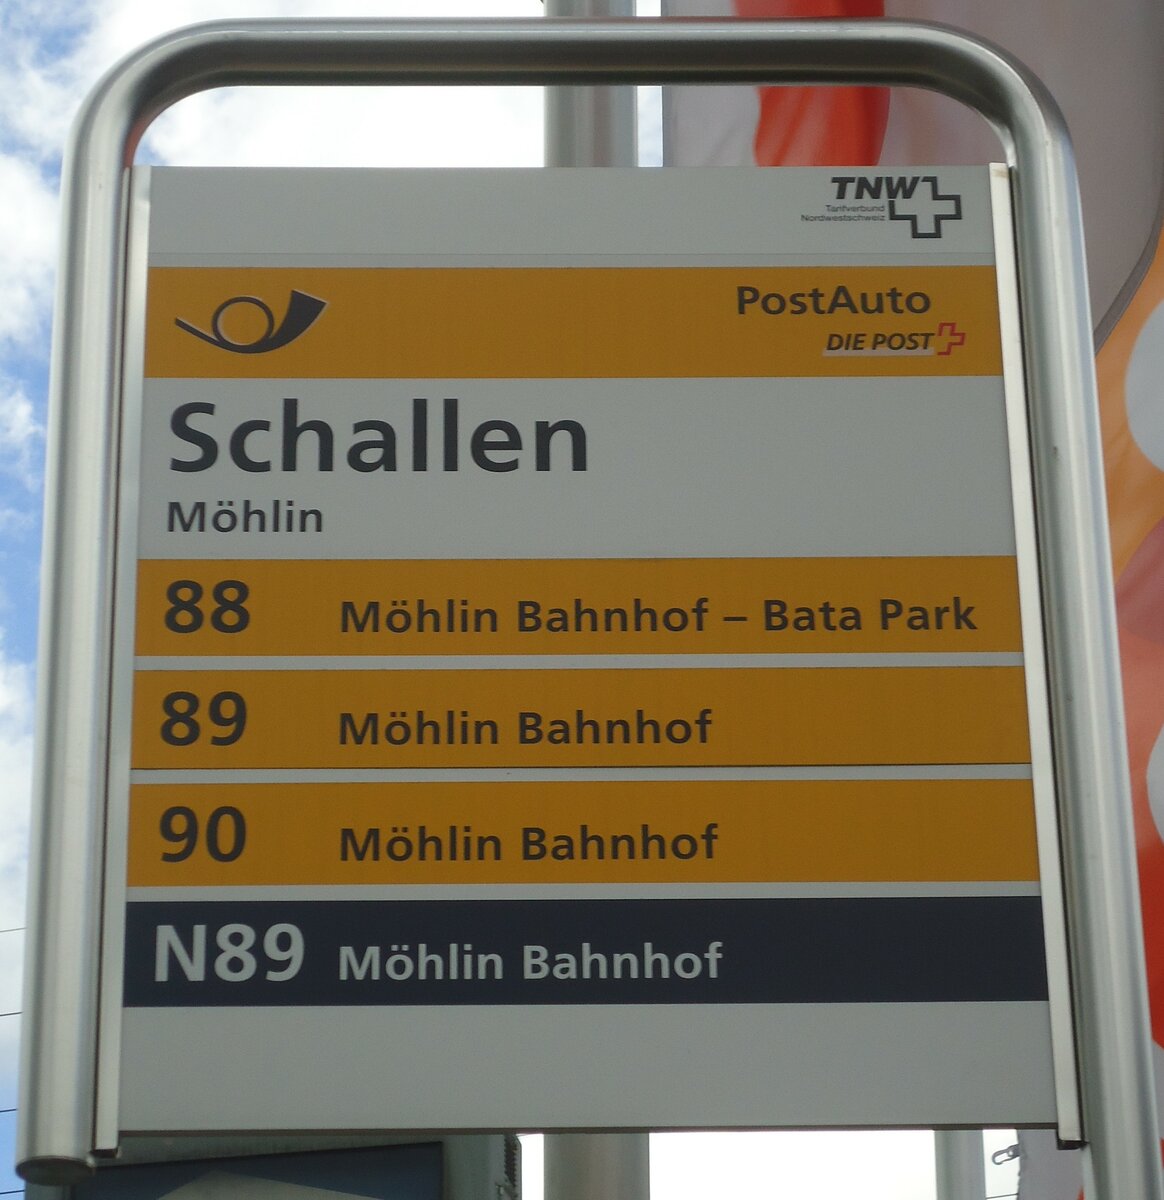 (138'693) - PostAuto-Haltestellenschild - Mhlin, Schallen - am 6. Mai 2012